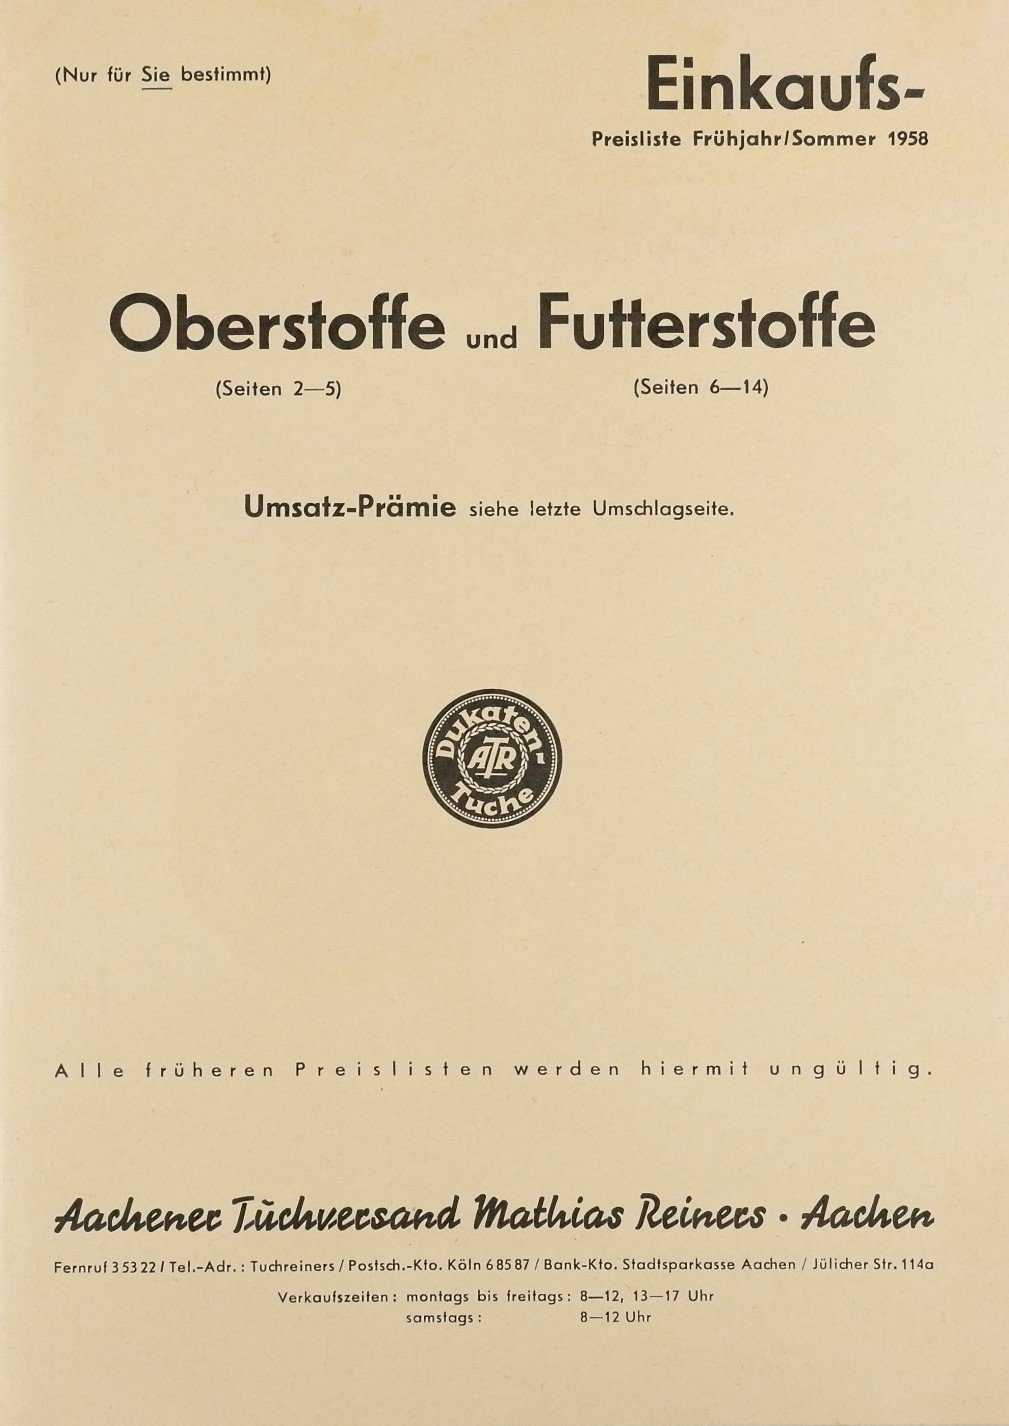 Einkaufs-Preisliste für Oberstoffe und Futterstoffe (Fruhjahr und Sommer 1958) (Volkskunde- und Freilichtmuseum Roscheider Hof CC0)